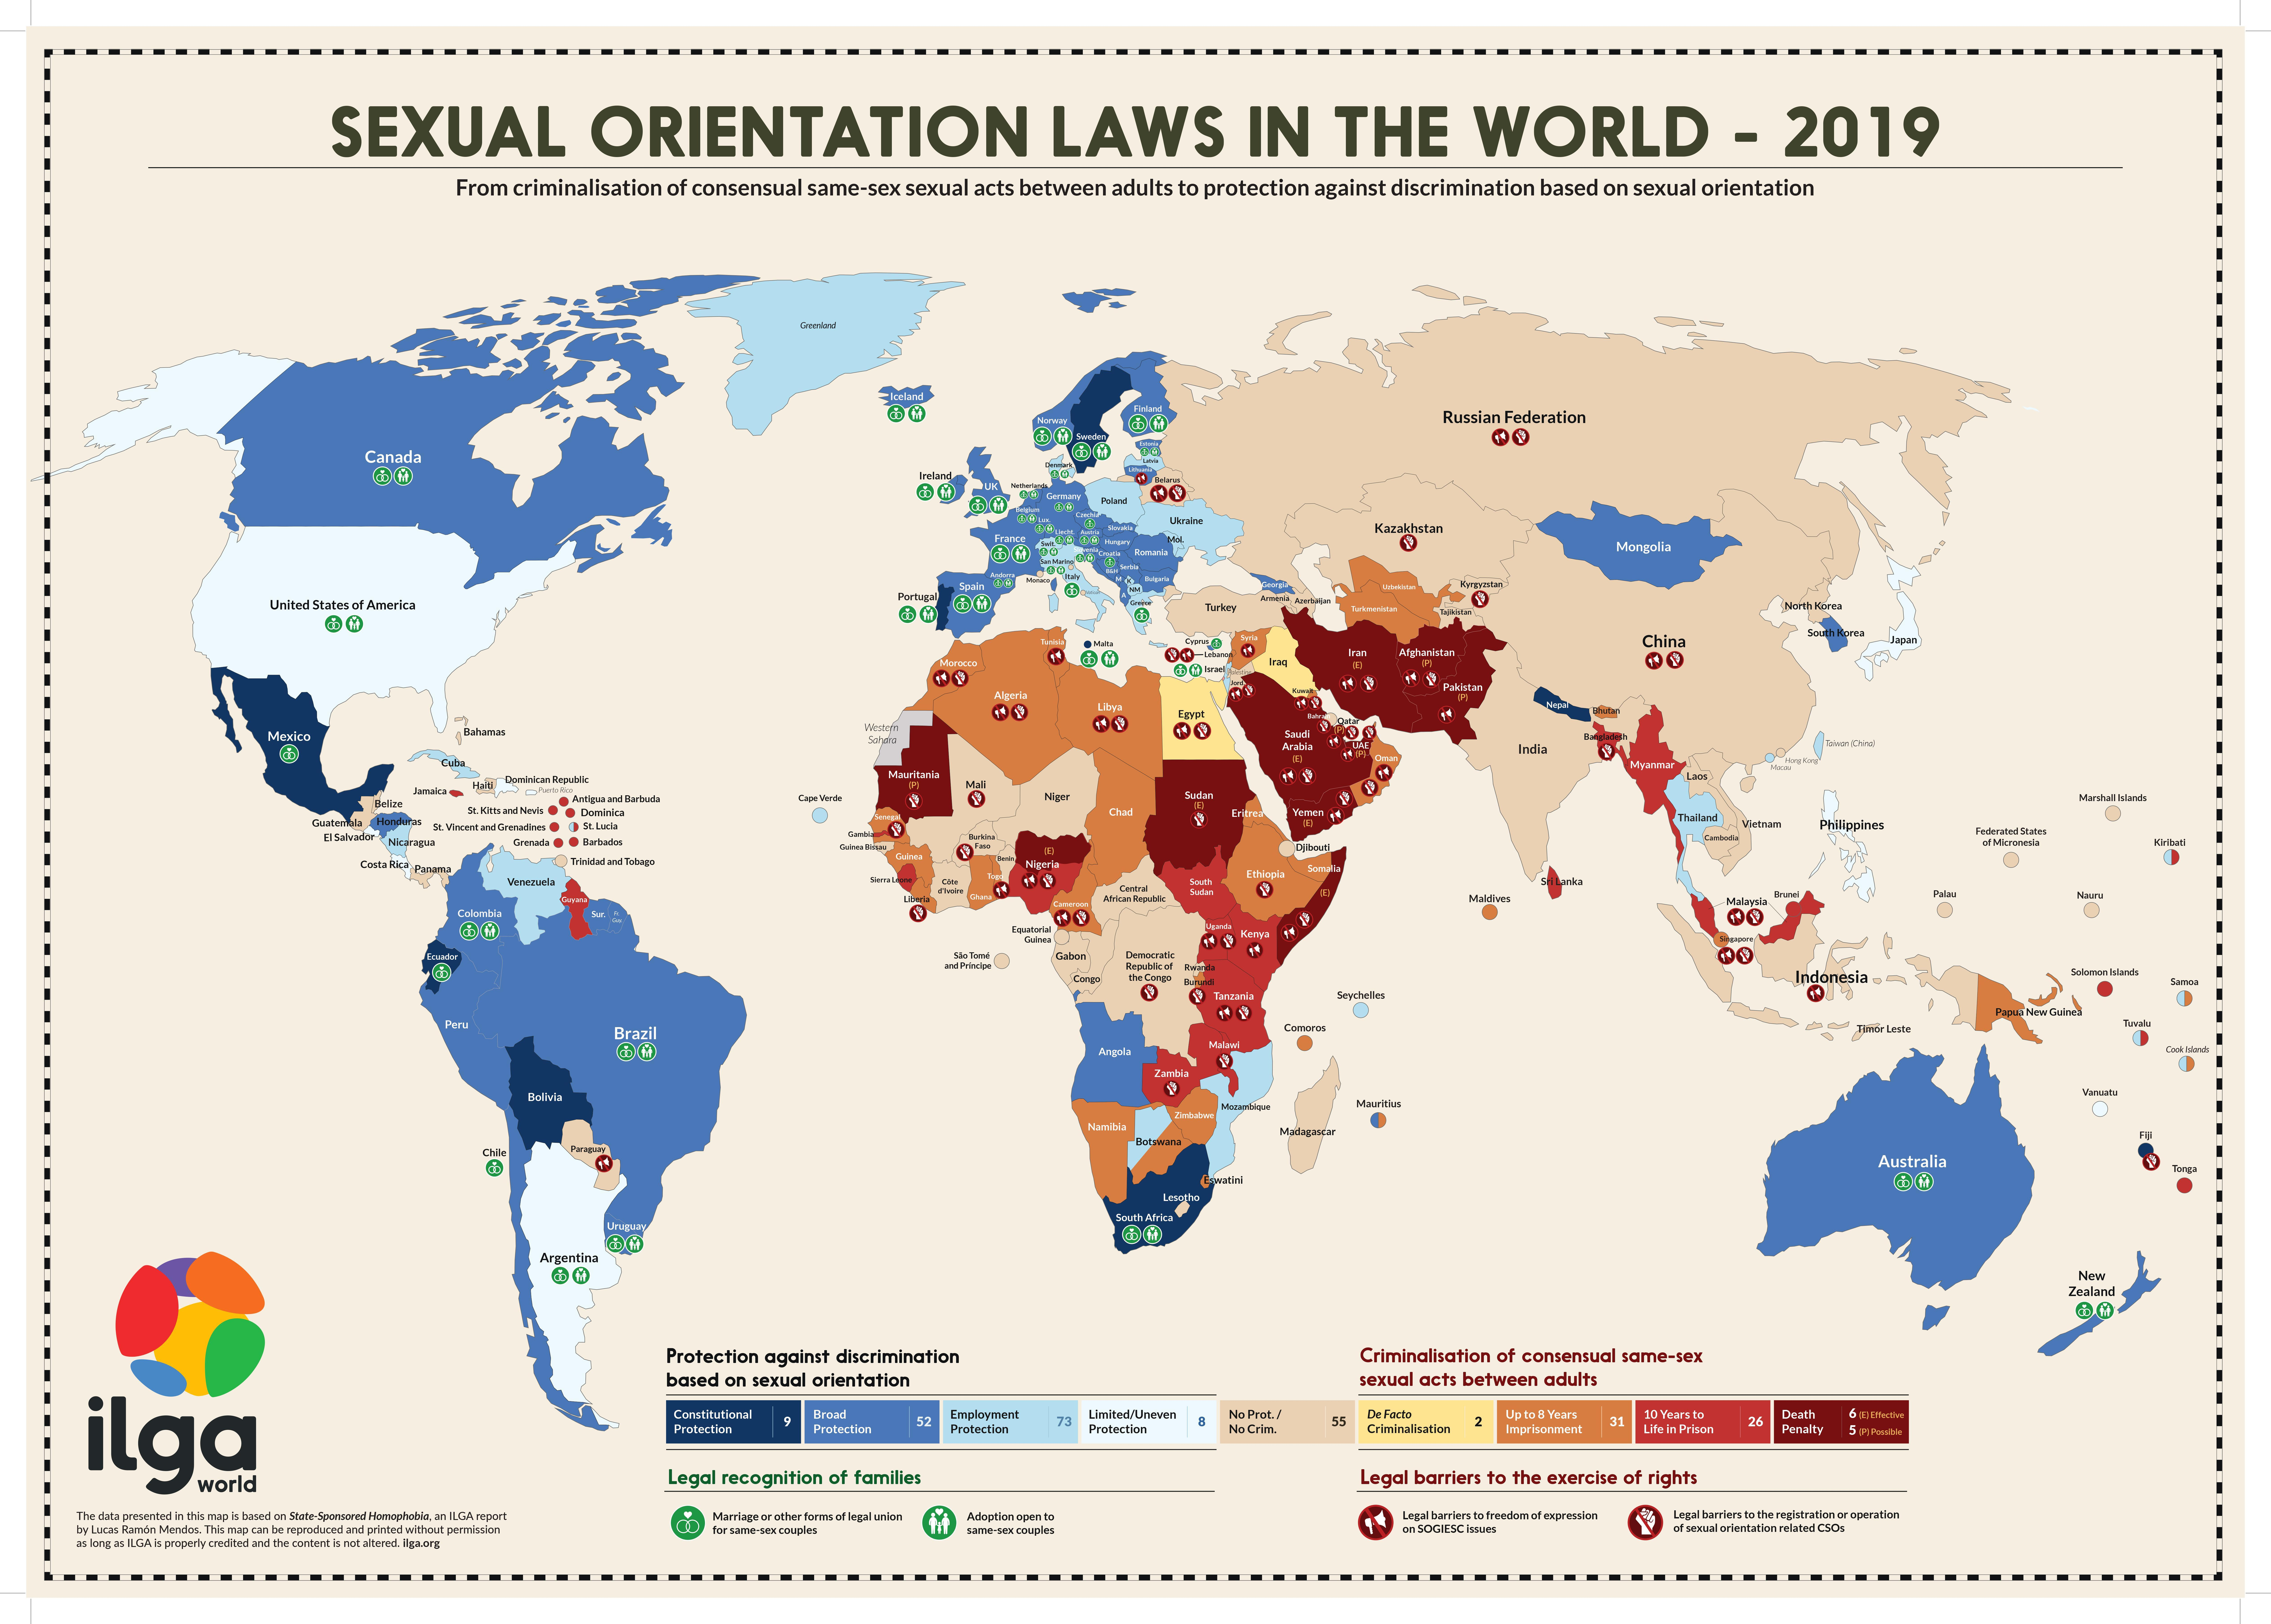 *Cijfer van Ilga: De internationale LGBTQI+ organisatie rapporteert elk jaar over de seksuele rechten wereldwijd. Op deze afbeelding kan je zien waar het holebihuwelijk of geregistreerd partnerschap voor koppels van hetzelfde geslacht mogelijk is. https://ilga.org/ilga-map-sexual-orientation-laws-2019